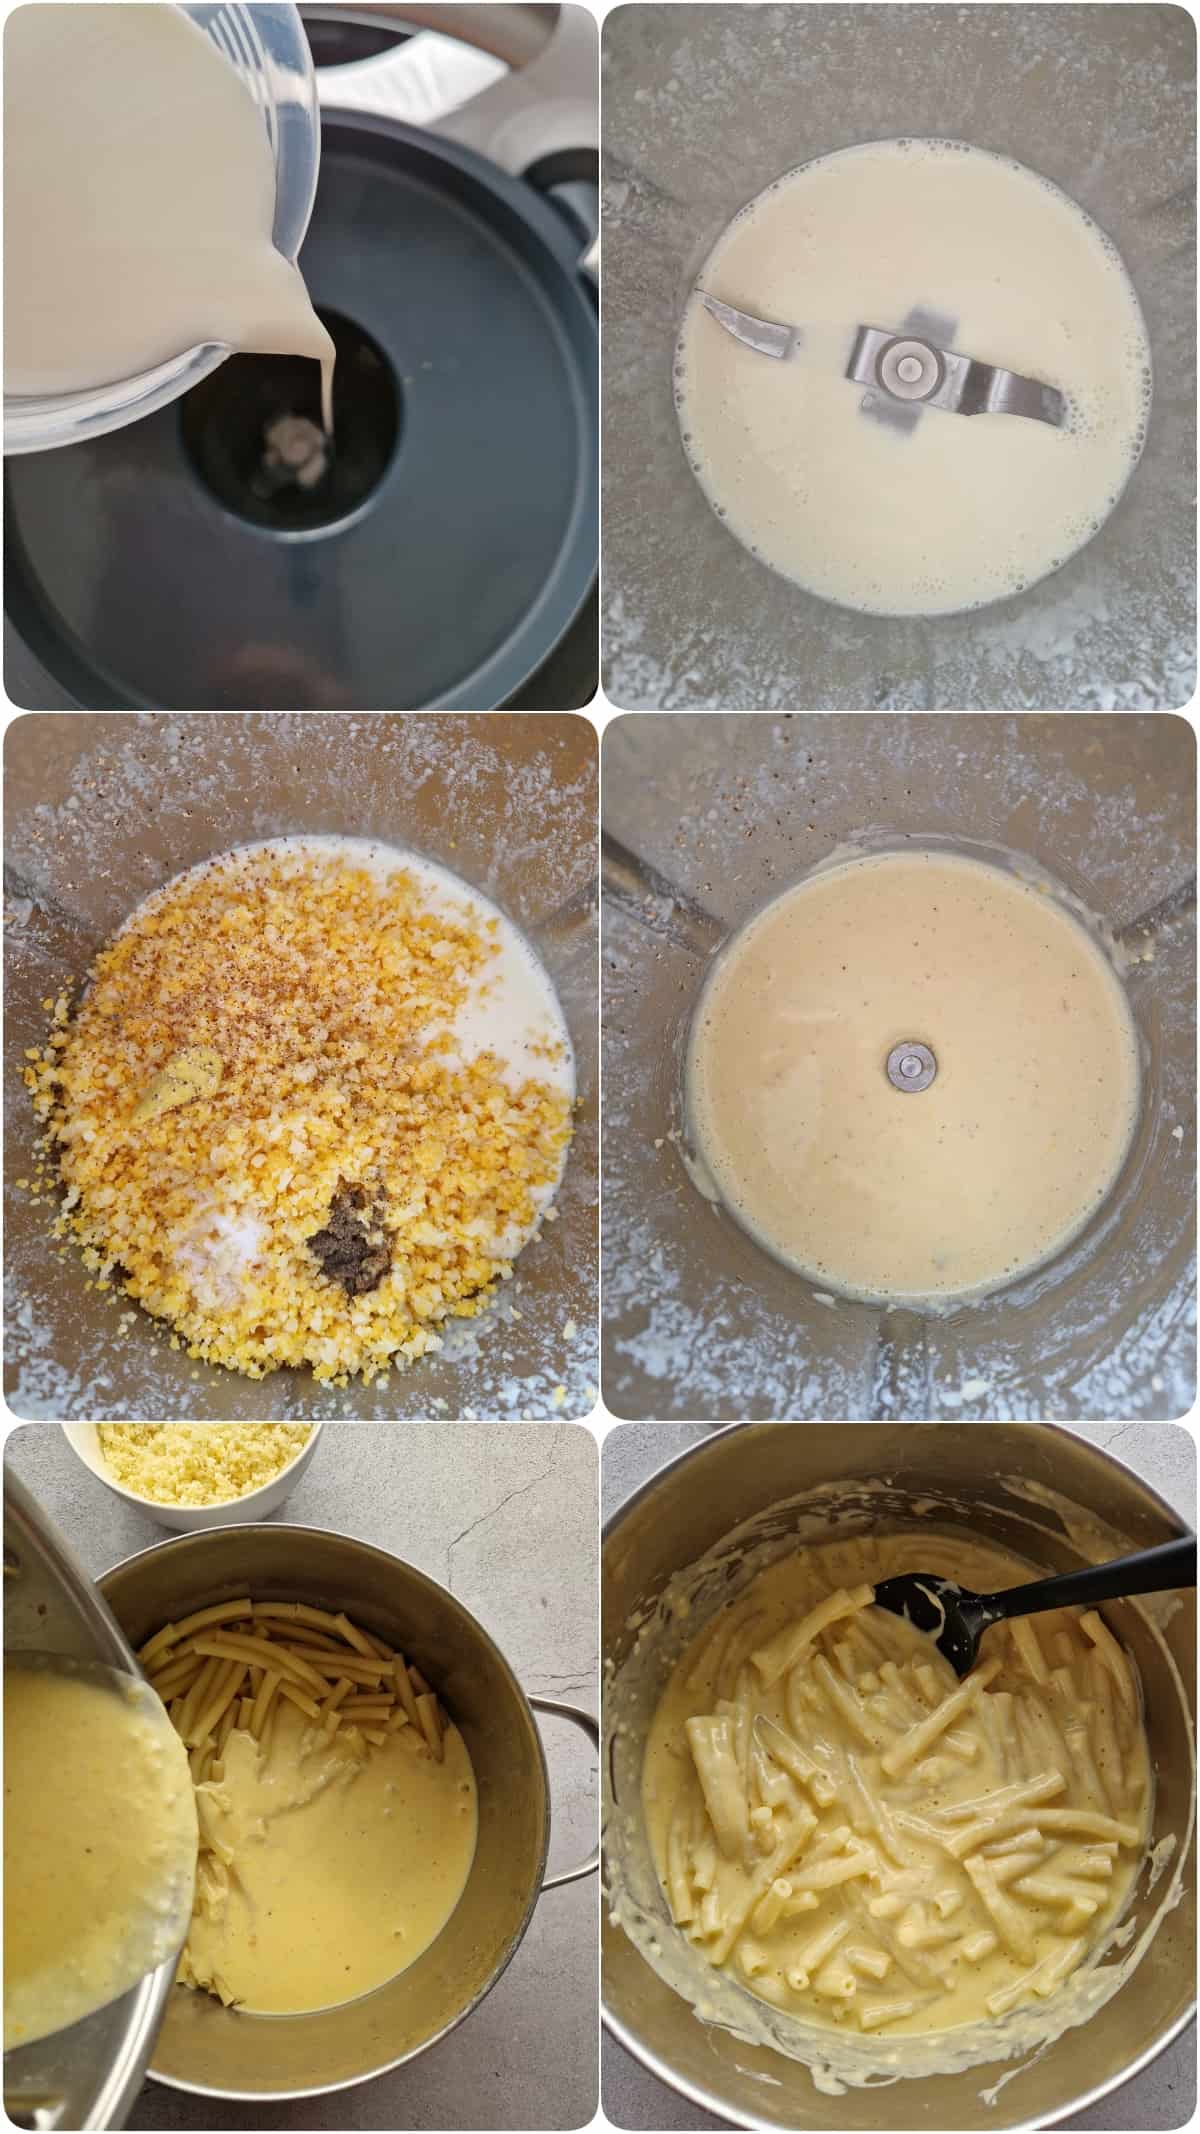 Eine Collage der Zubereitungsschritte für Mac and Cheese.